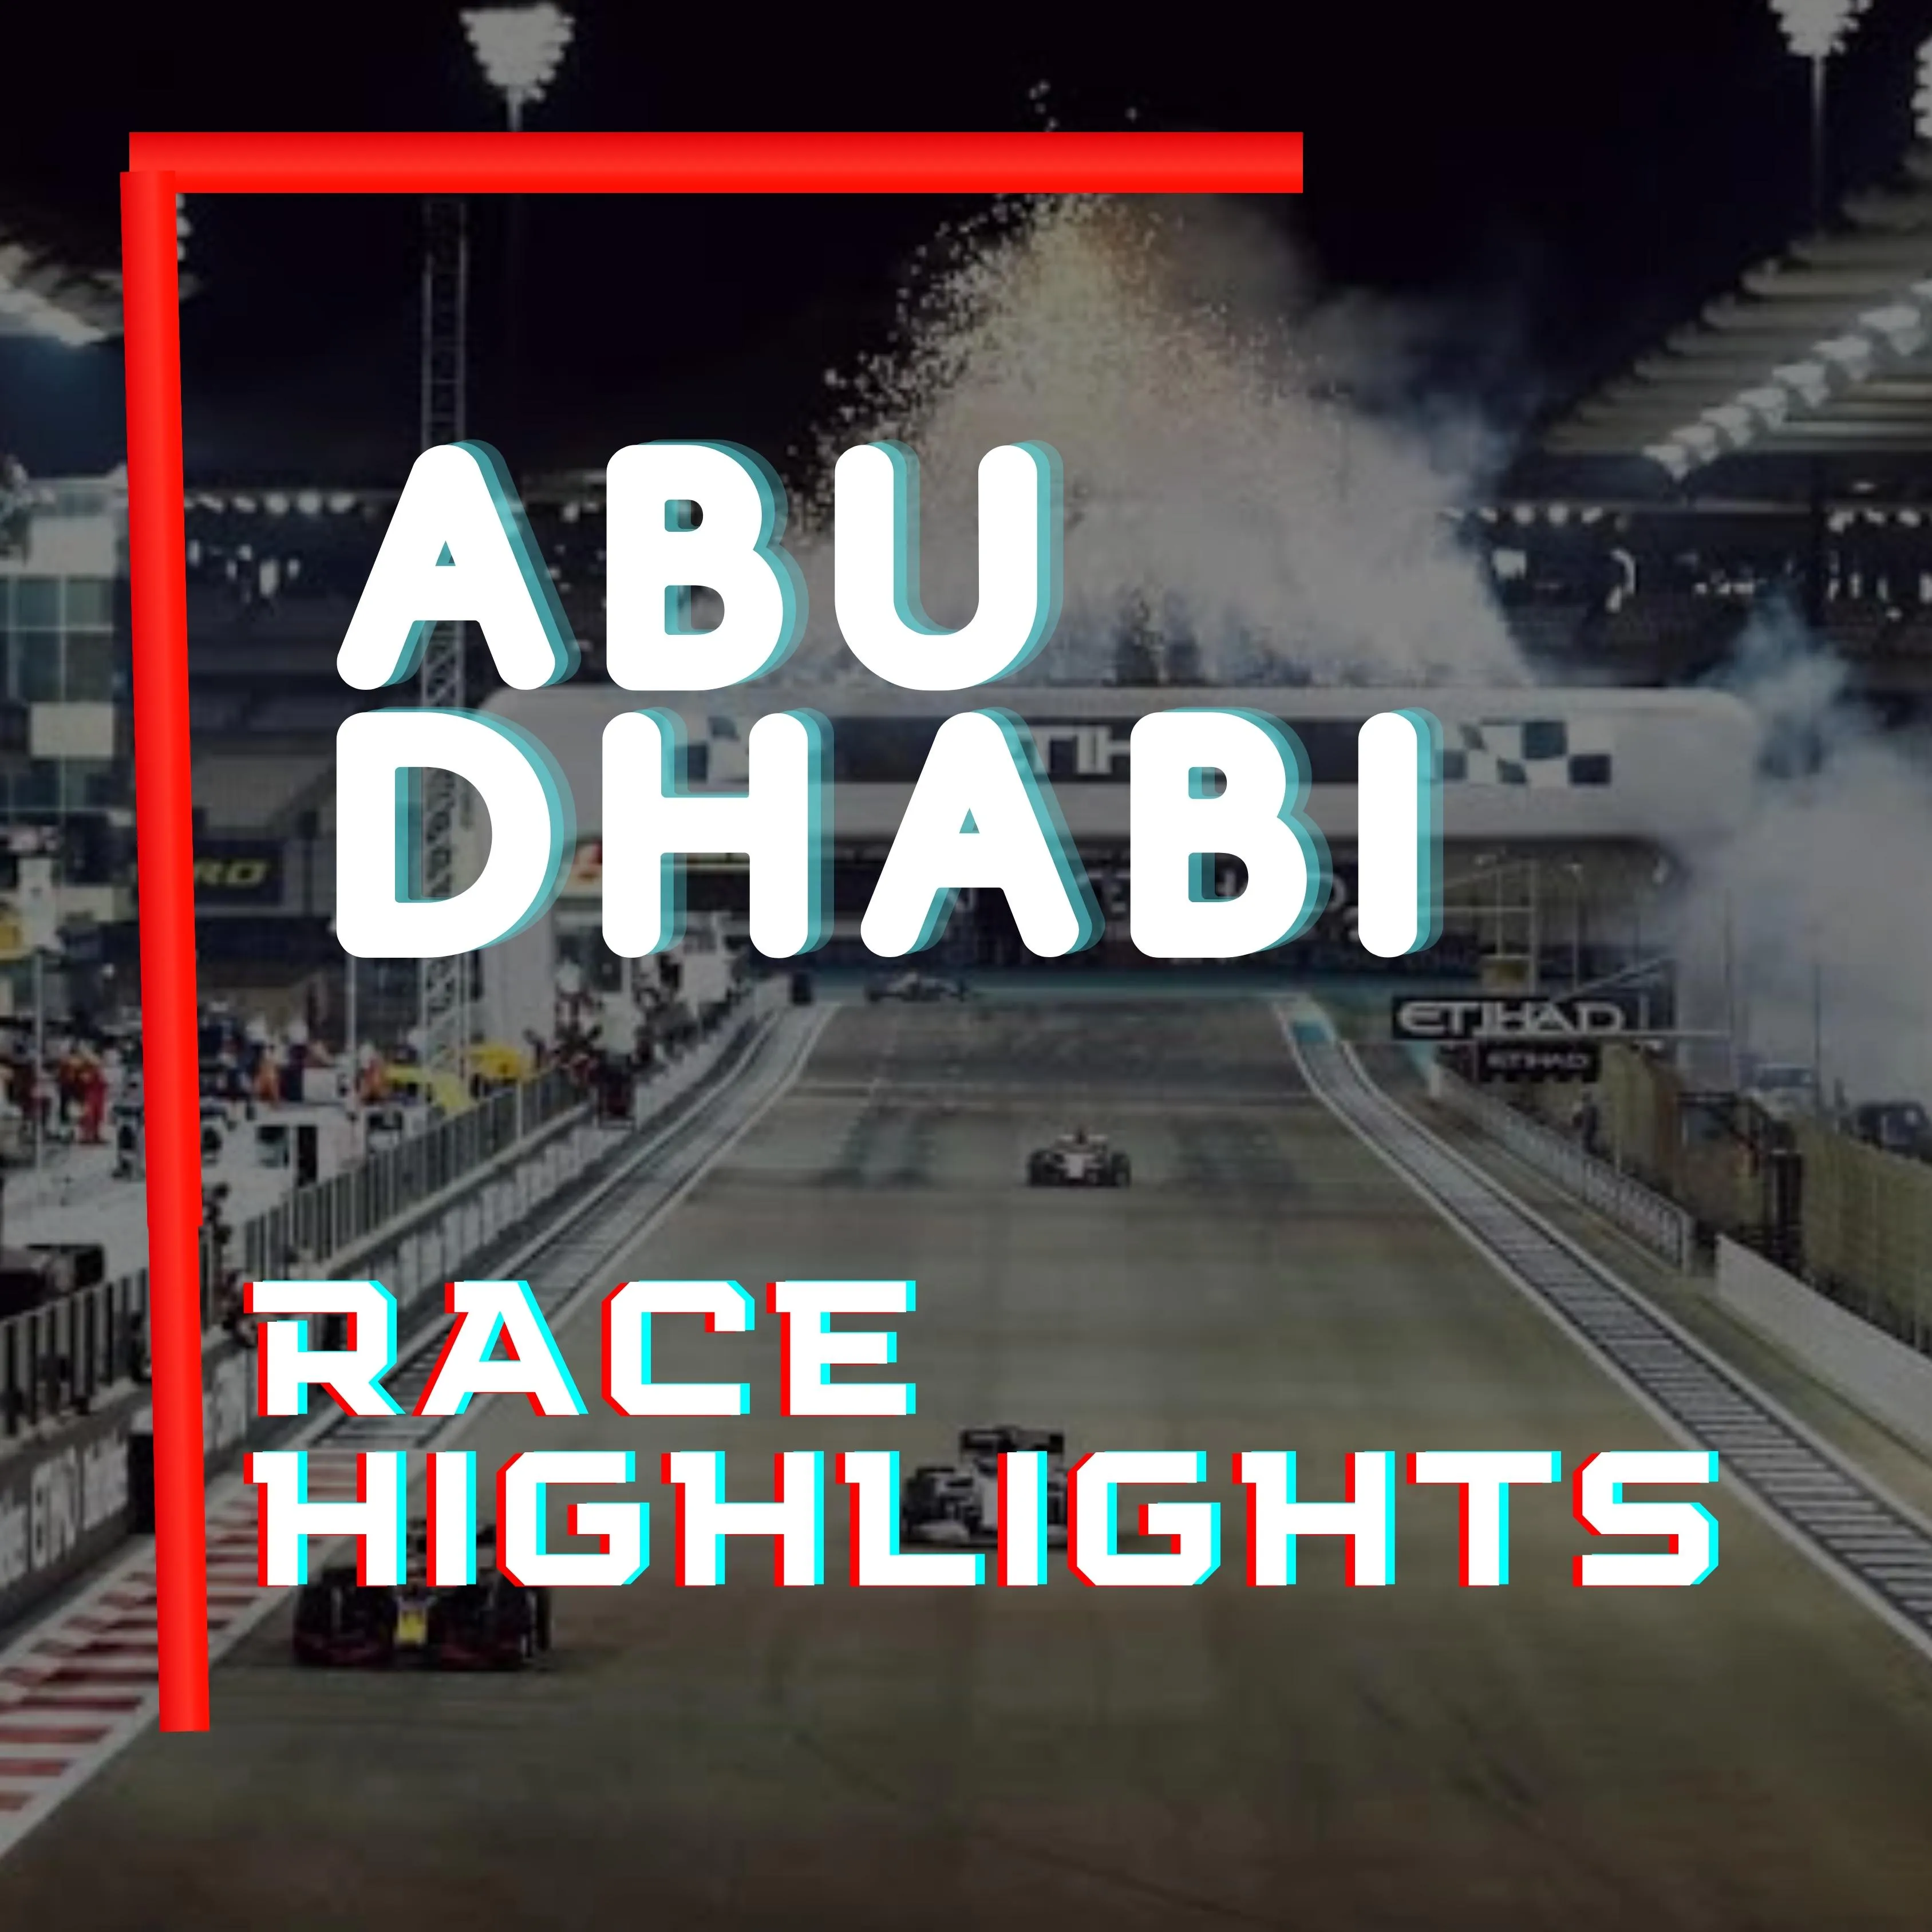 CAR RACING IN ABU DHABI